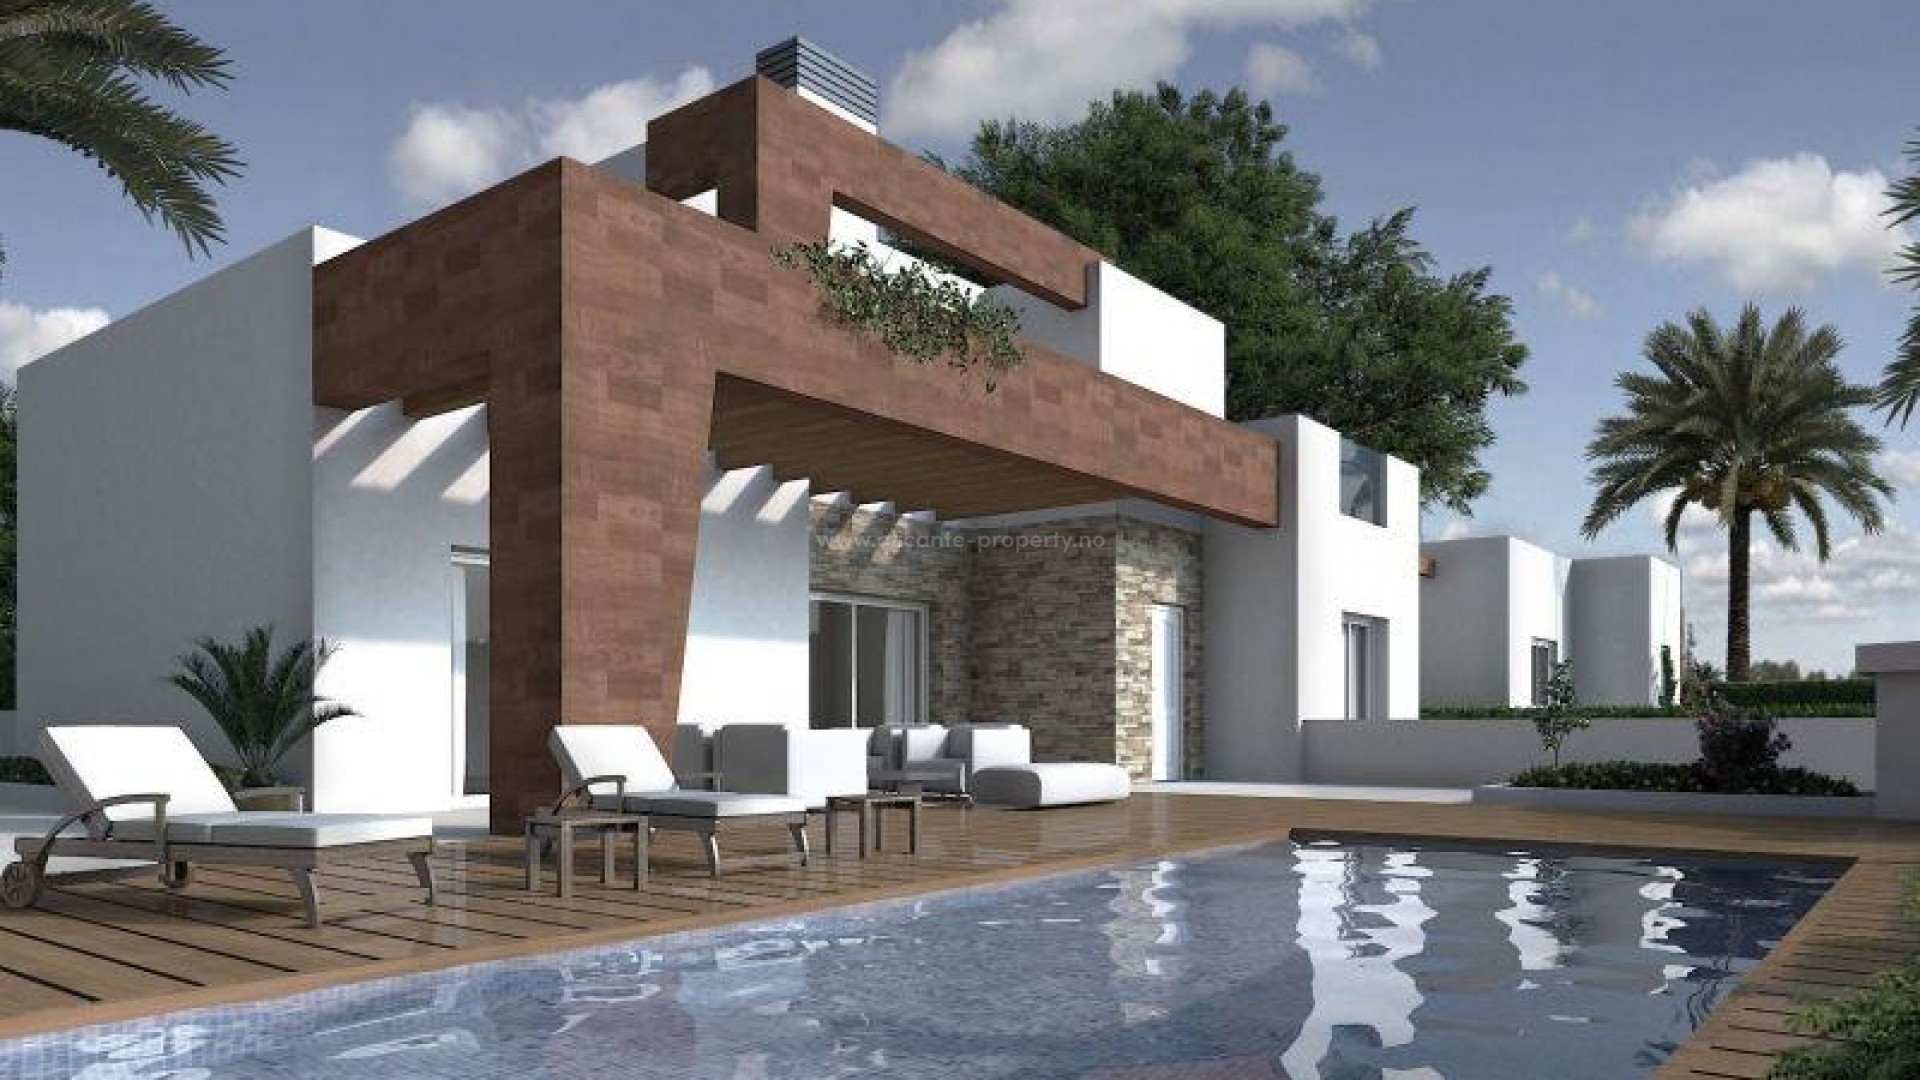 Huset/villaen ligge i Los Altos, 5 minutter til Playa Punta Prima,3 doble soverom, 4 bad, privat basseng, solarium/terrasse. Fint boligområde